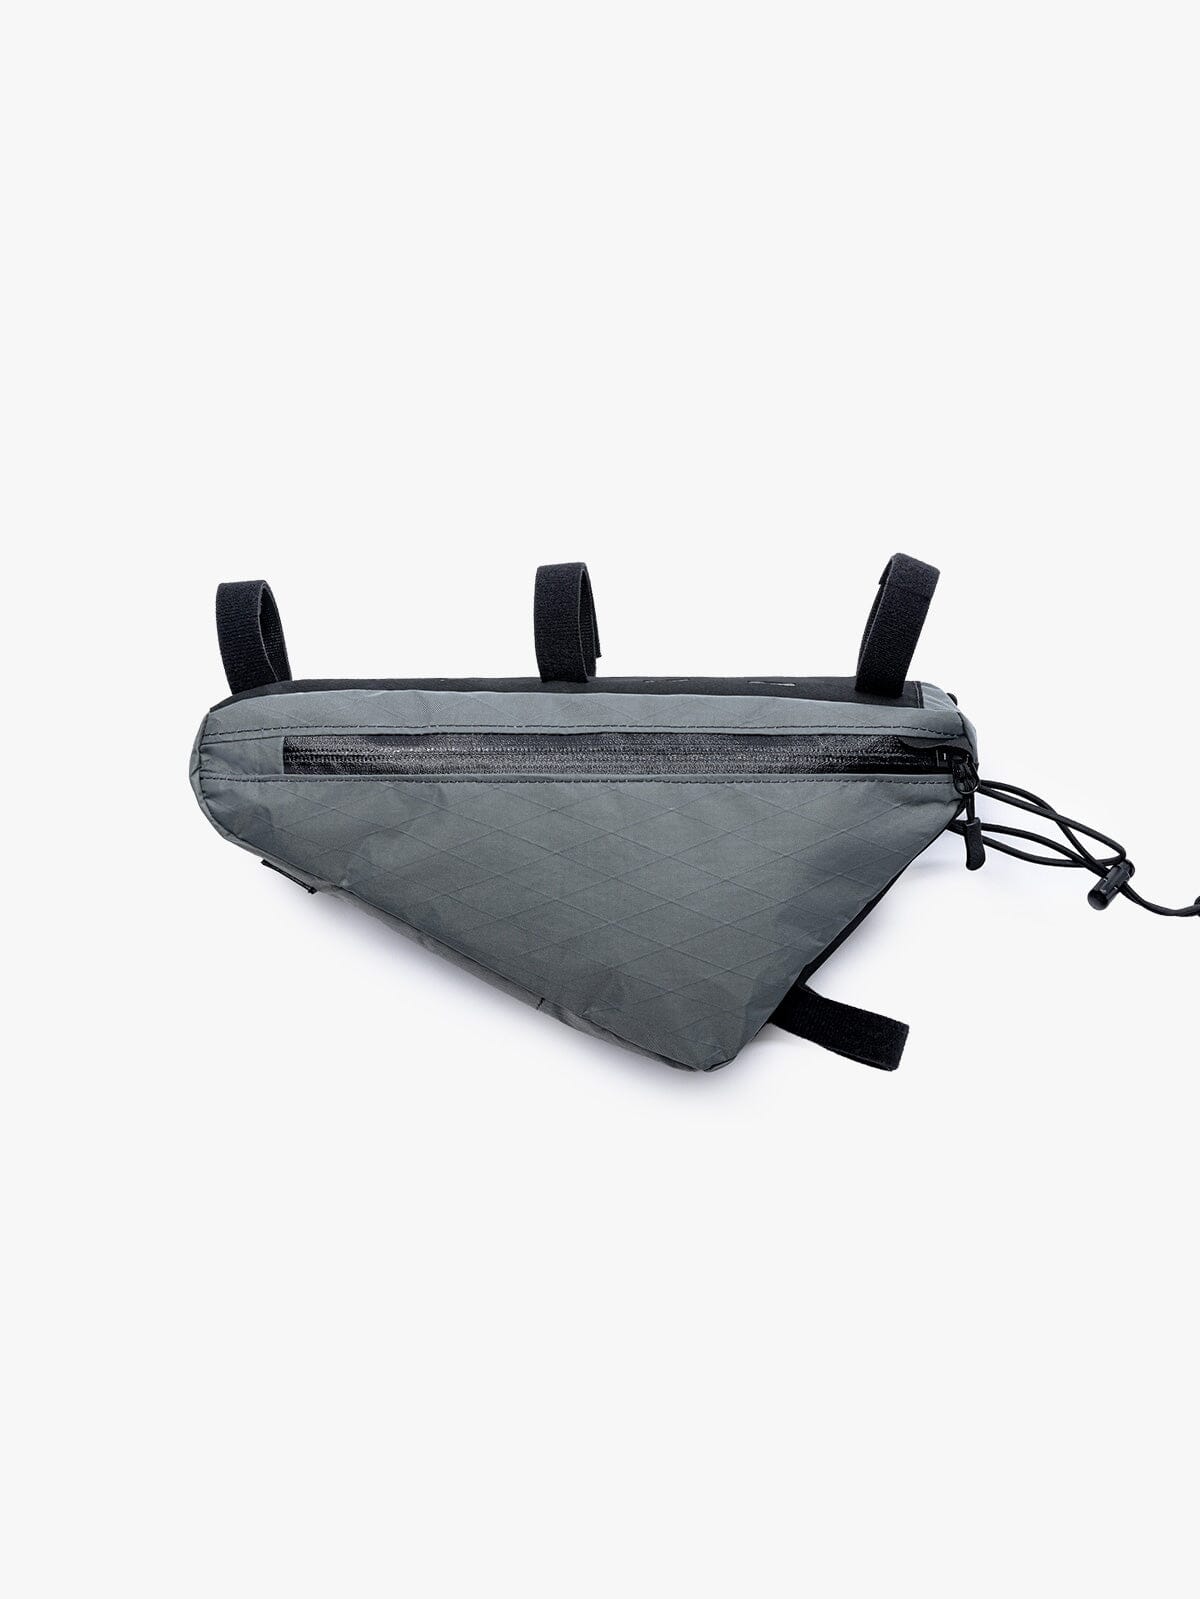 Slice Frame Bag by Mission Workshop - Säänkestävät laukut ja tekniset vaatteet - San Francisco & Los Angeles - Rakennettu kestämään - ikuinen takuu